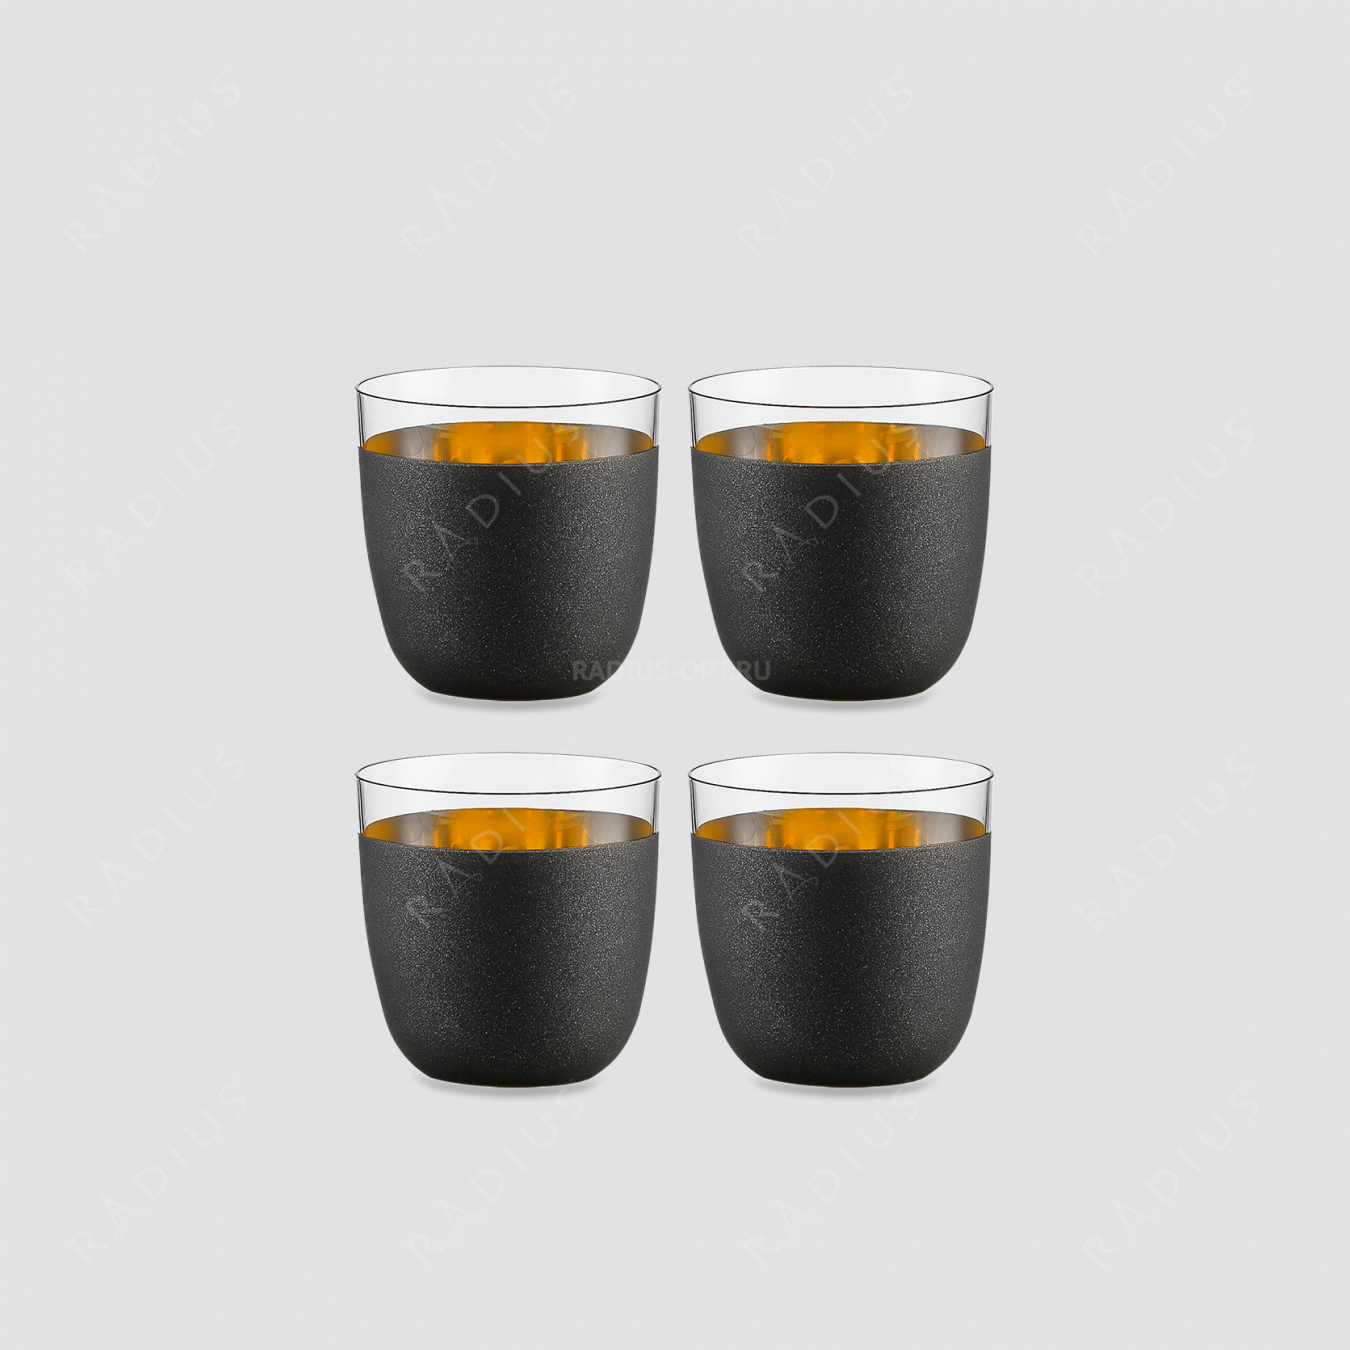 Набор из 4-х стаканов Gold, материал: бессвинцовый хрусталь, цвет: черный/золото, серия Cosmo, EISCH, Германия